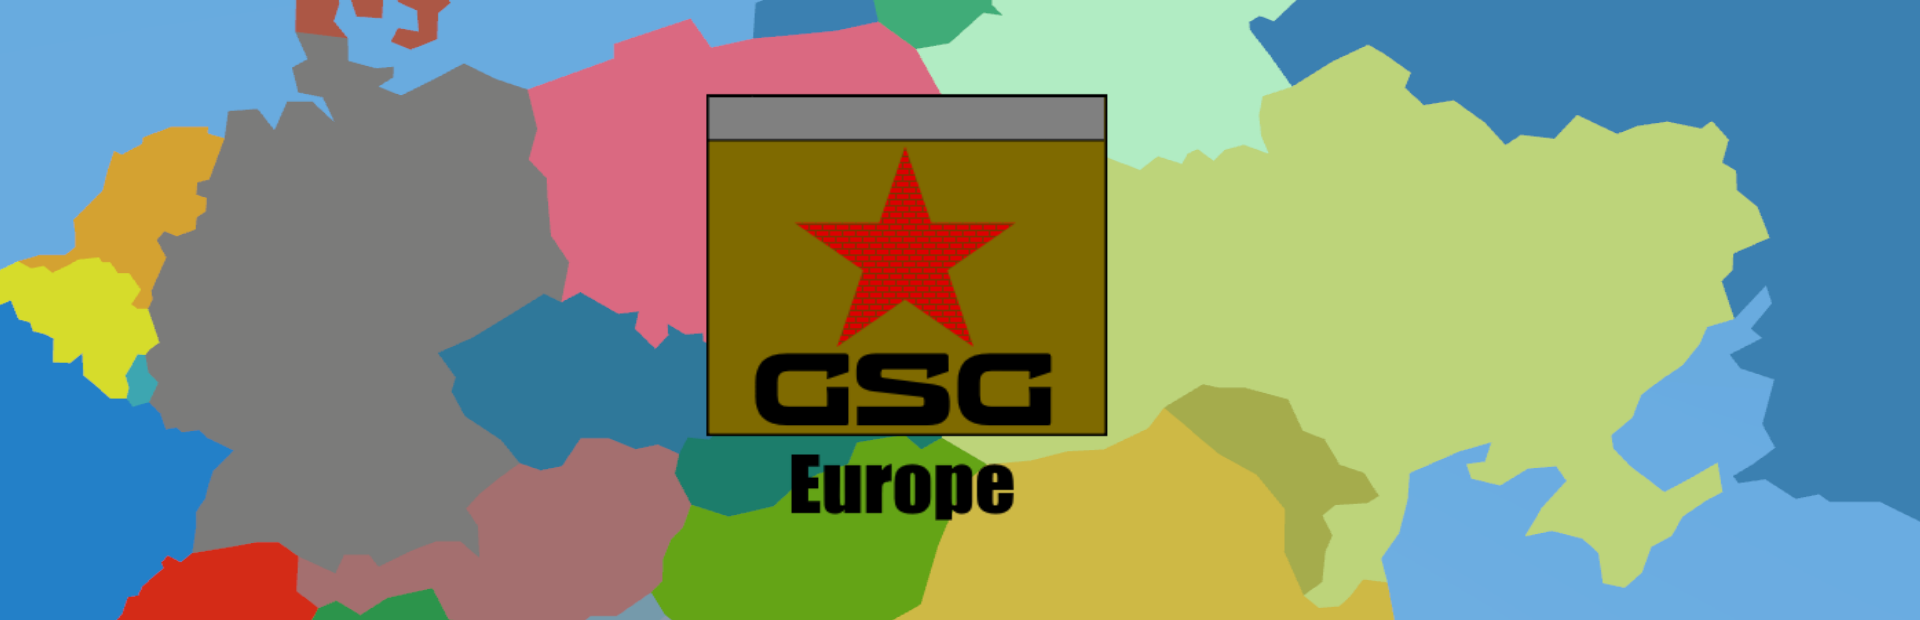 GSG - Europe